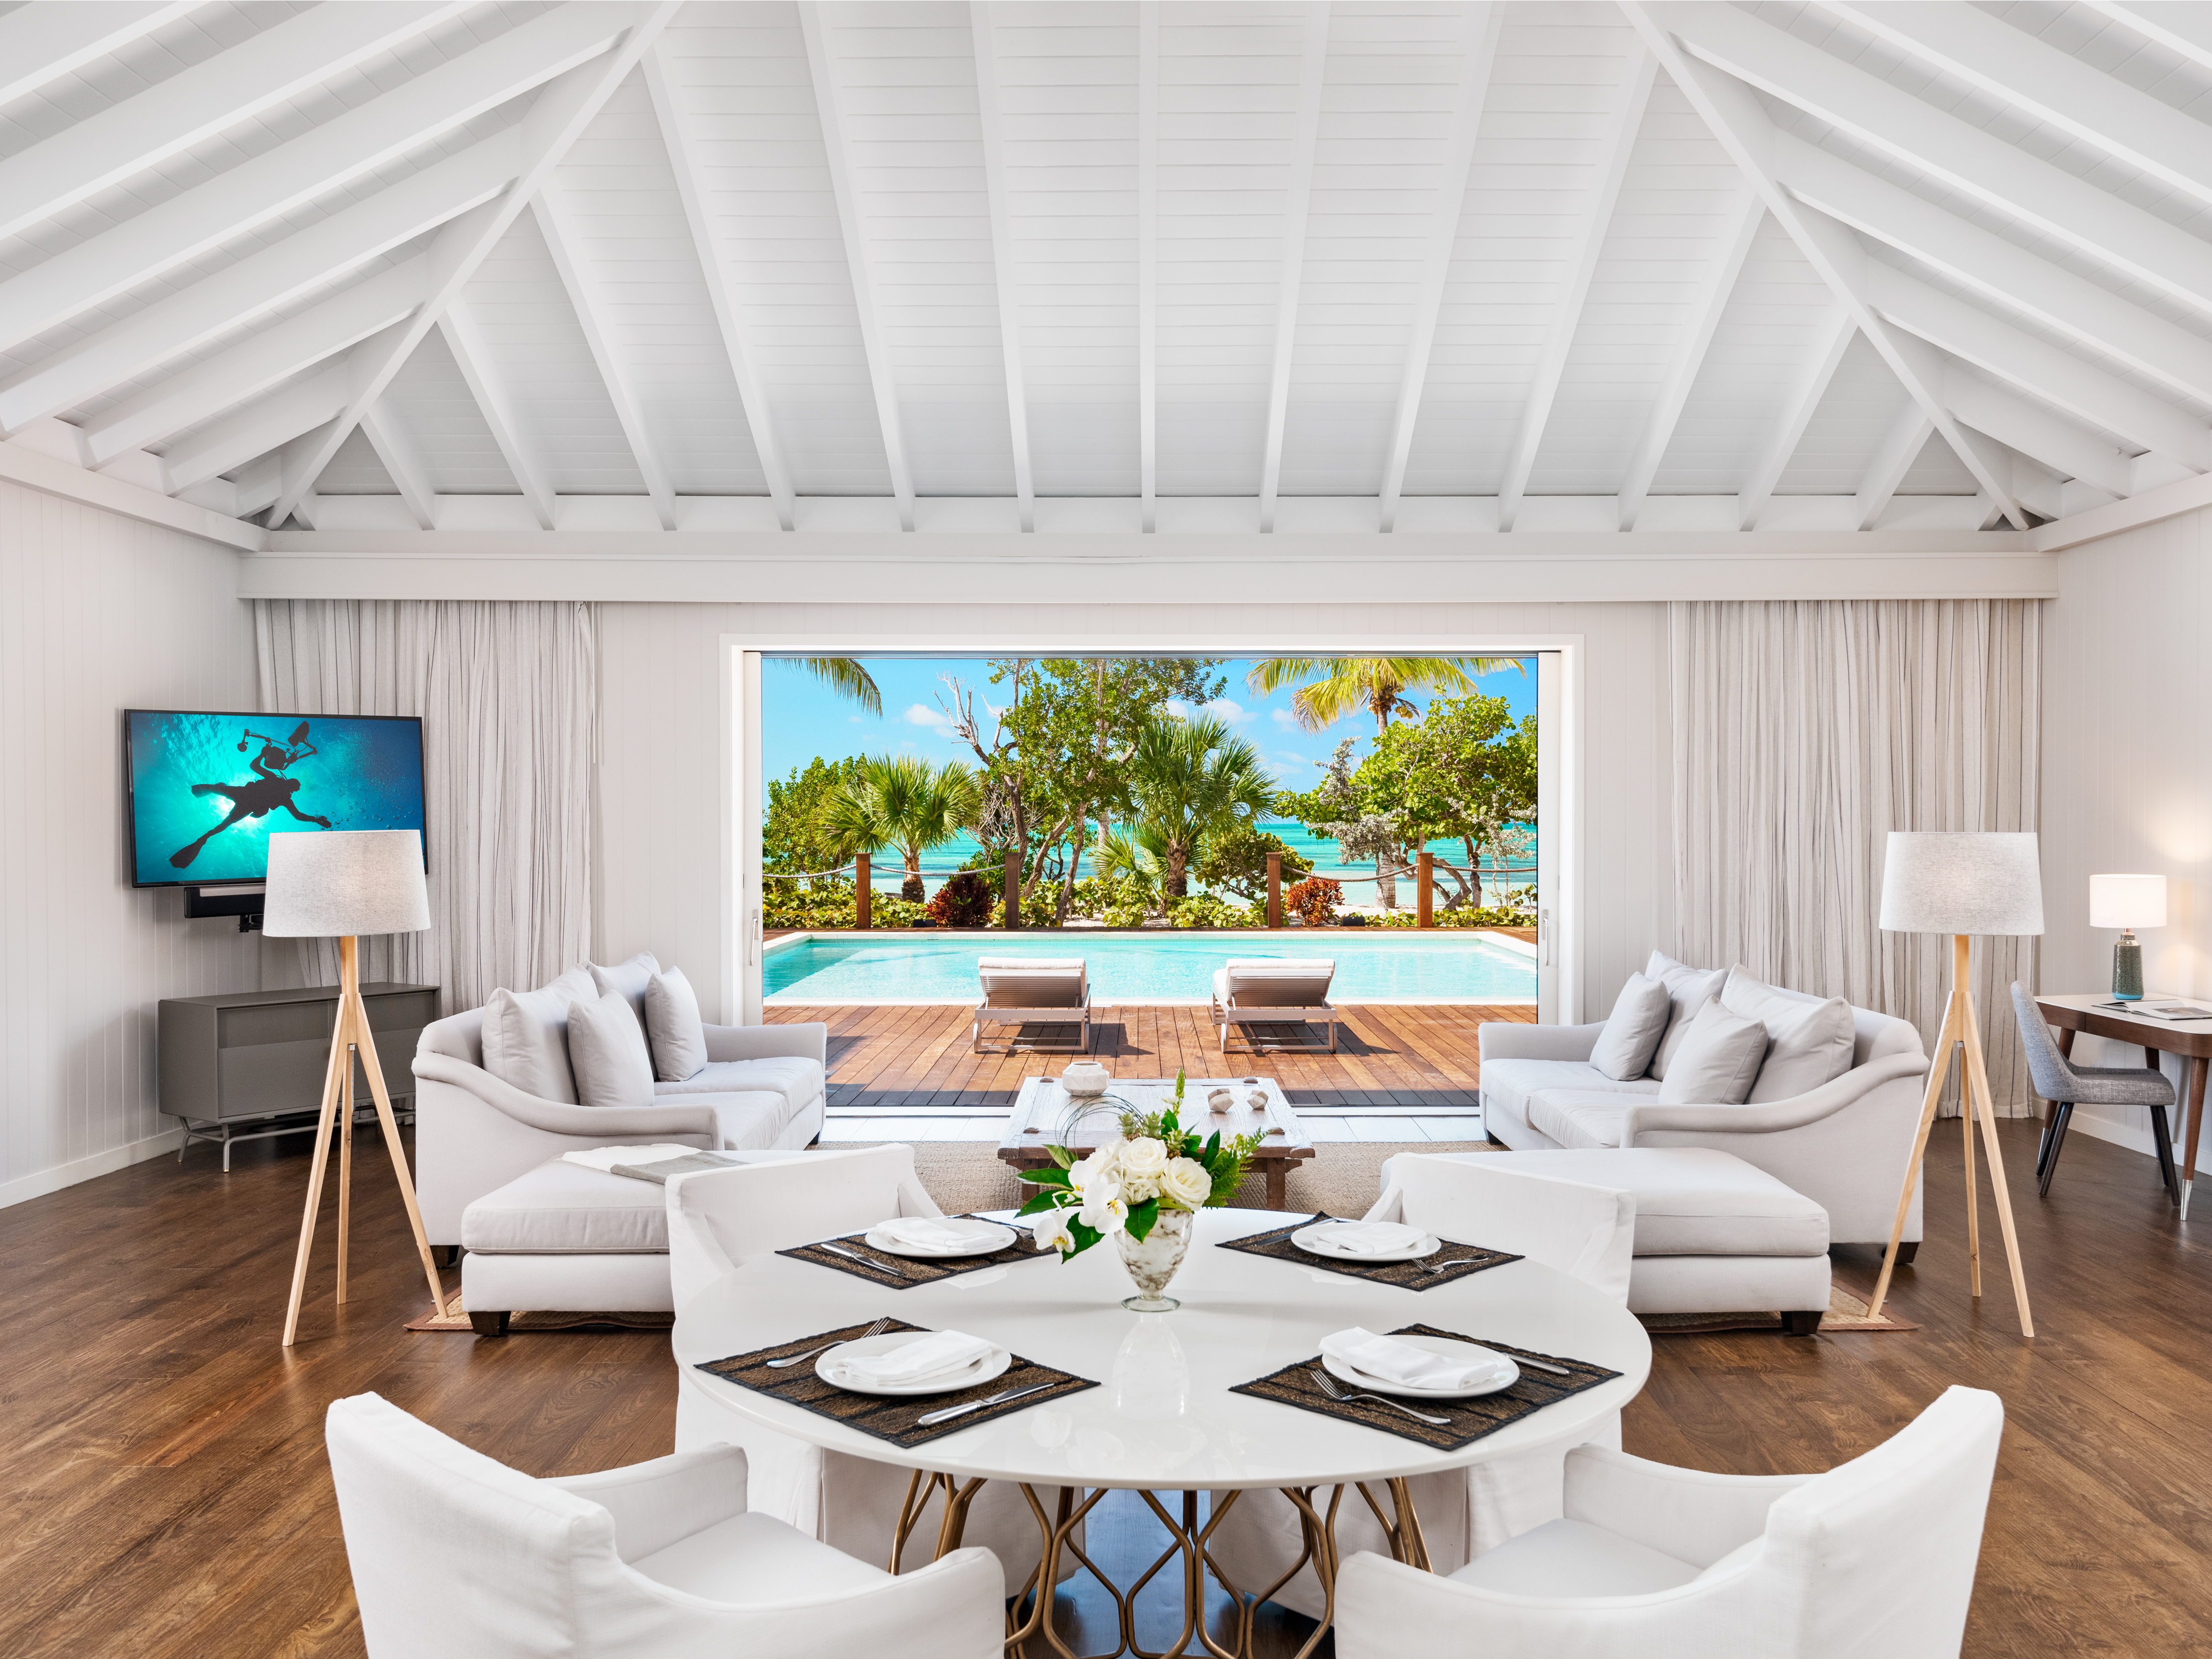 ブルース・ウィルス、約36億円でカリブ海の別荘を売却中